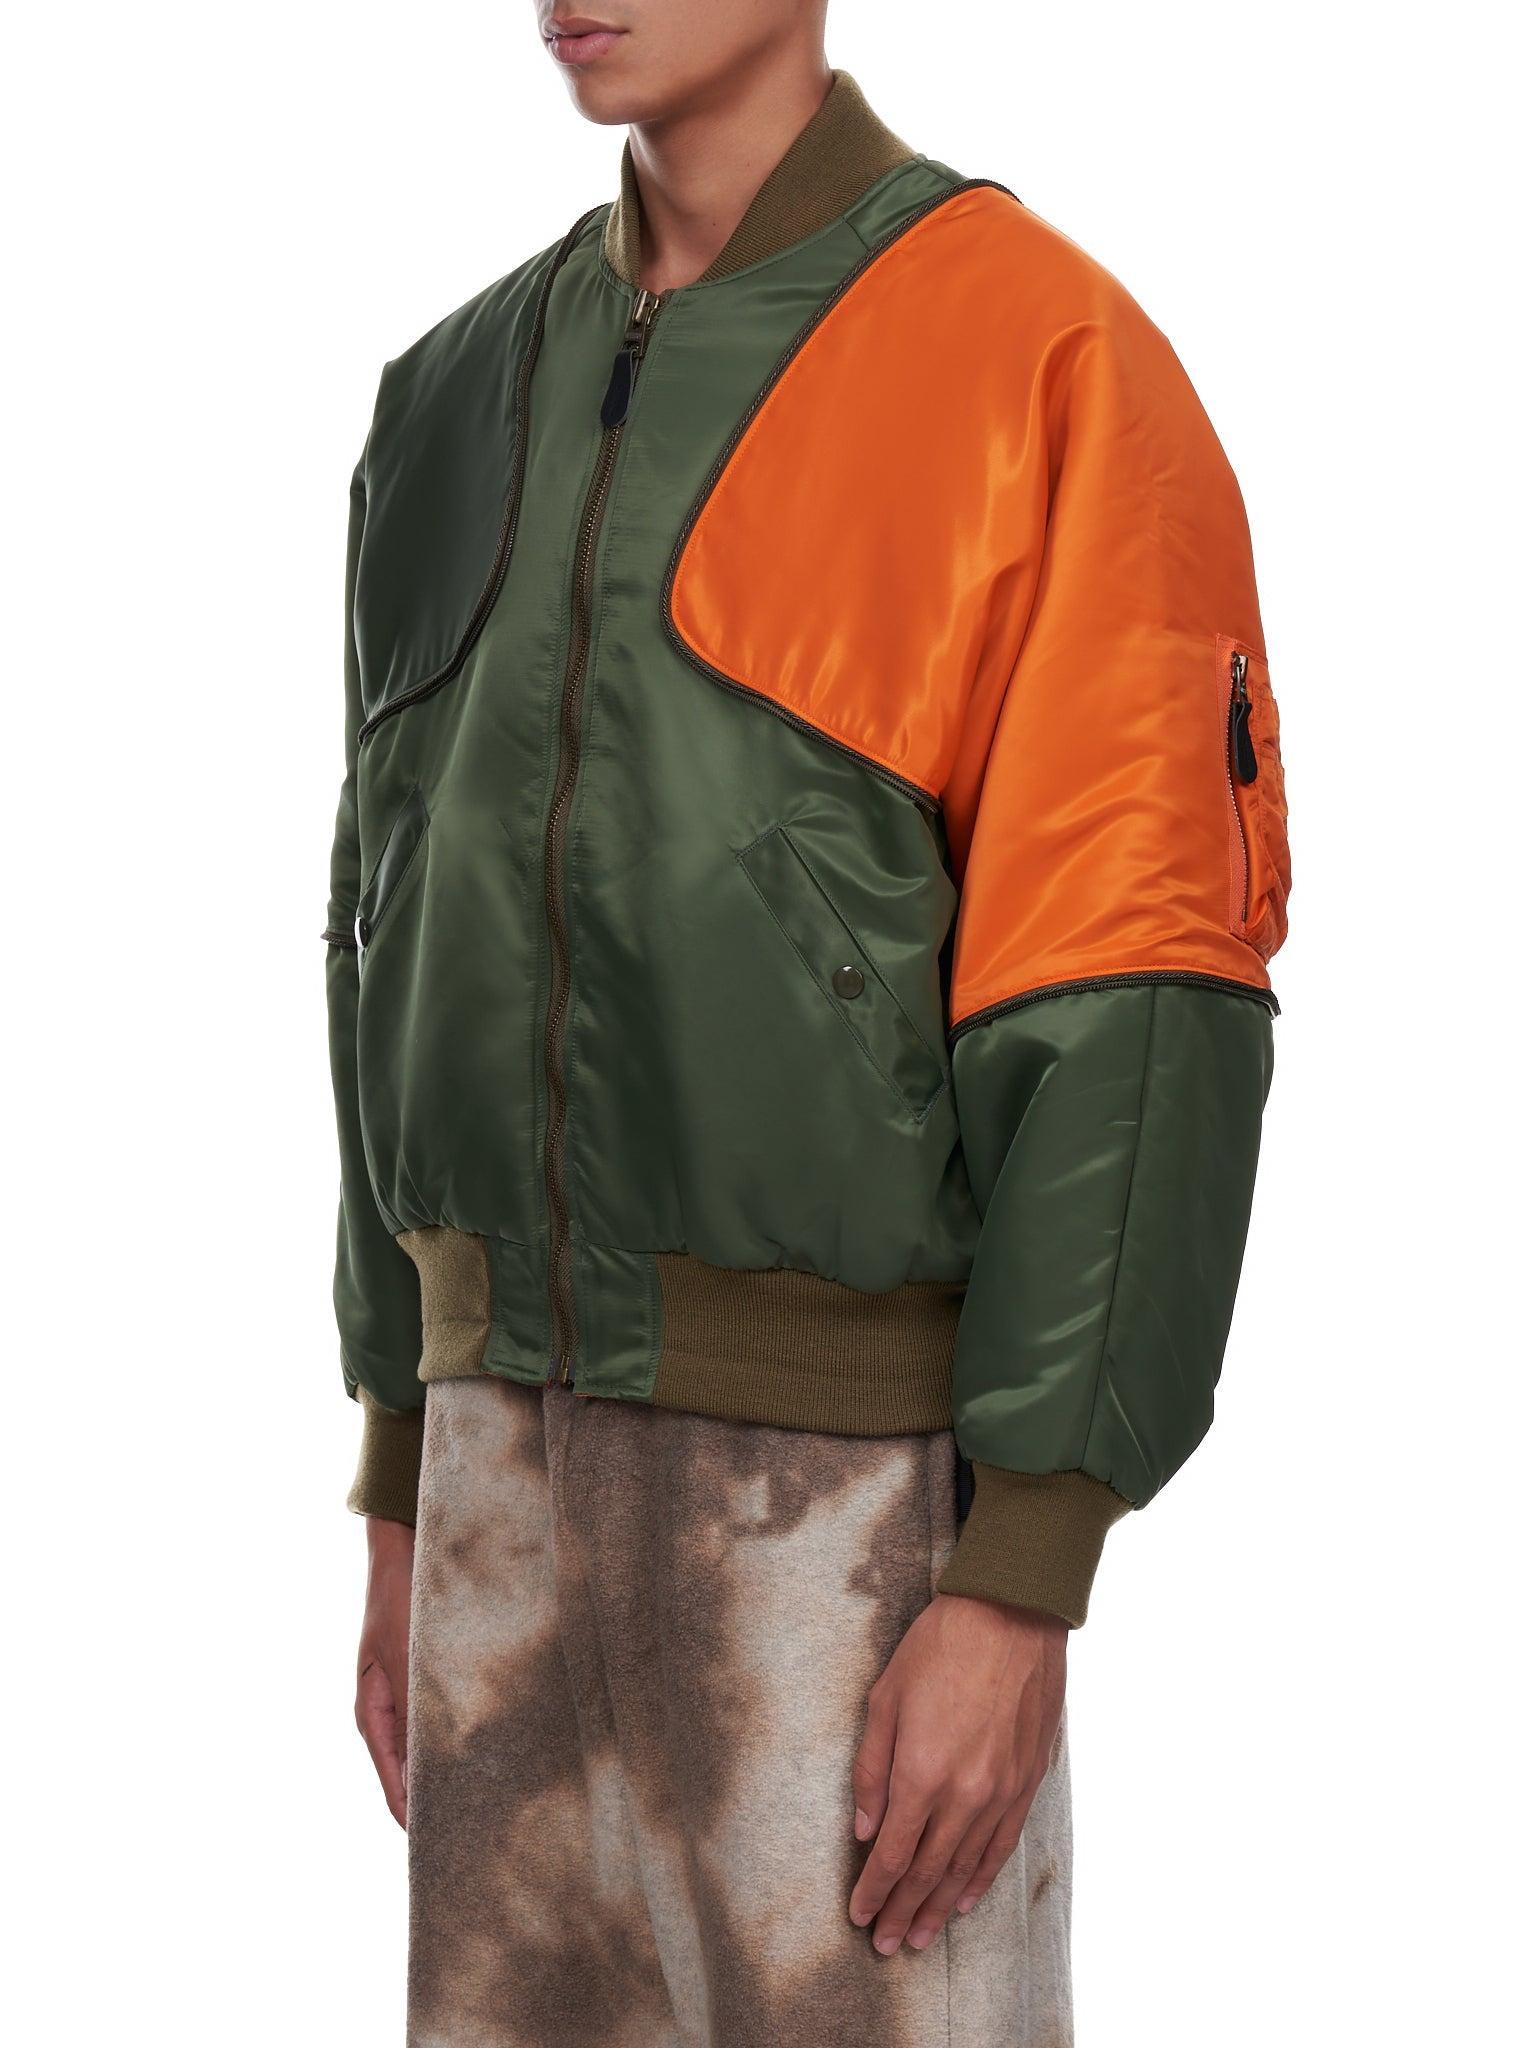 Kapital Synthetic Pillow Bomber Jacket in Khaki (Green) for Men - Lyst